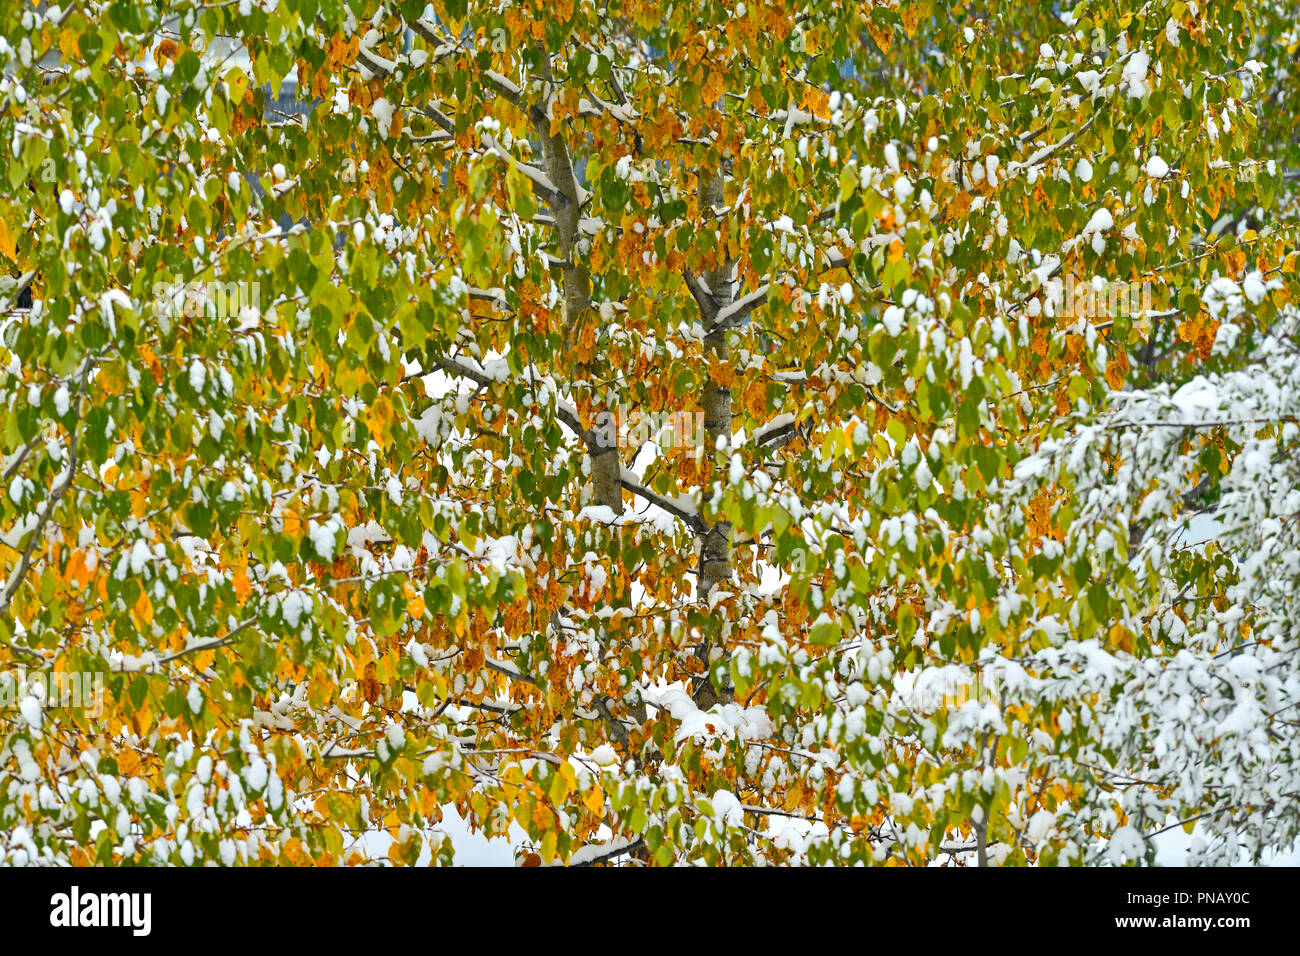 Un carattere orizzontale immagine del primo settembre la caduta della neve sulle foglie colorate di un albero a foglie decidue nelle zone rurali di Alberta in Canada. Foto Stock